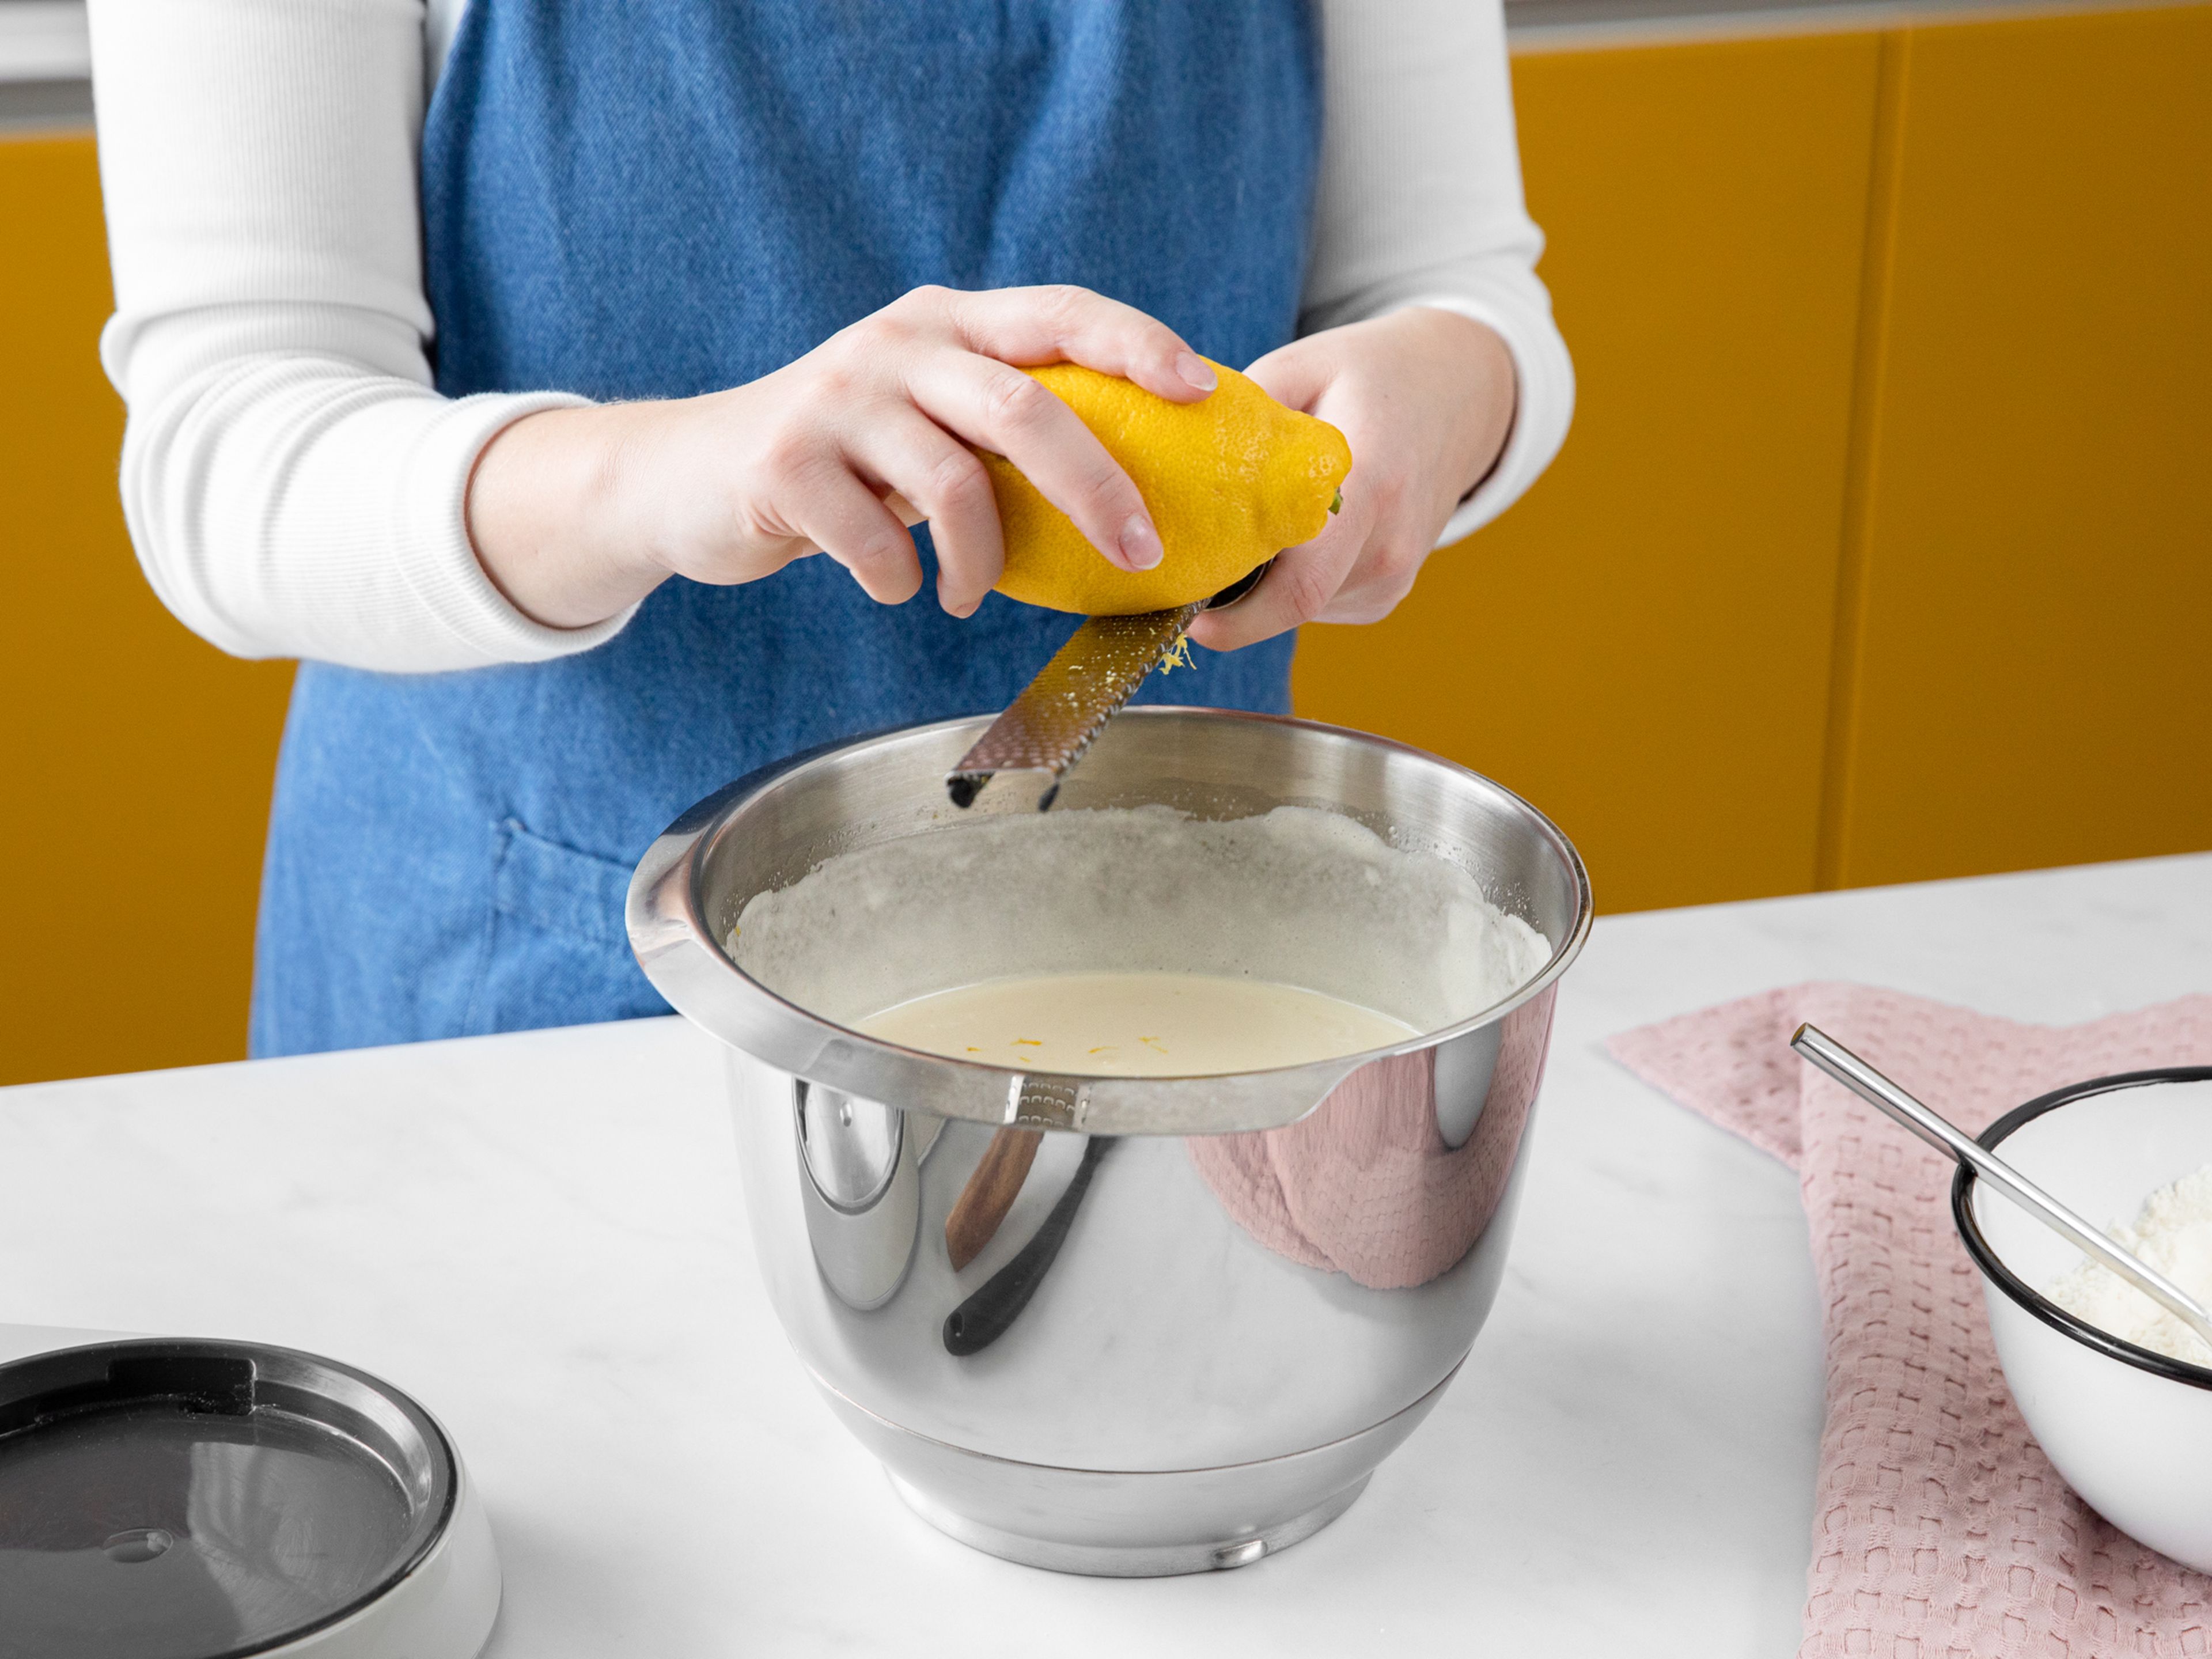 Den Backofen auf 180°C vorheizen. Zwei Springformen fetten und mit Backpapier auslegen. Für die Böden die Eier mit dem Zucker und dem Vanillezucker in der Küchenmaschine schaumig schlagen (ca. 5 Min.). Währenddessen Mehl, Backpulver, Stärke und Salz in einer Schüssel mischen. Die geschmolzene Butter und Zitronenabrieb unter die Ei-Mischung rühren. Mehl-Mix nach und nach in die schaumige Eimasse sieben und vorsichtig unterheben. Jeweils die Hälfte der Masse in die vorbereiteten Springformen füllen und im vorgeheizten Backofen für ca. 25 – 30 min backen. Dann die Böden komplett auskühlen lassen.